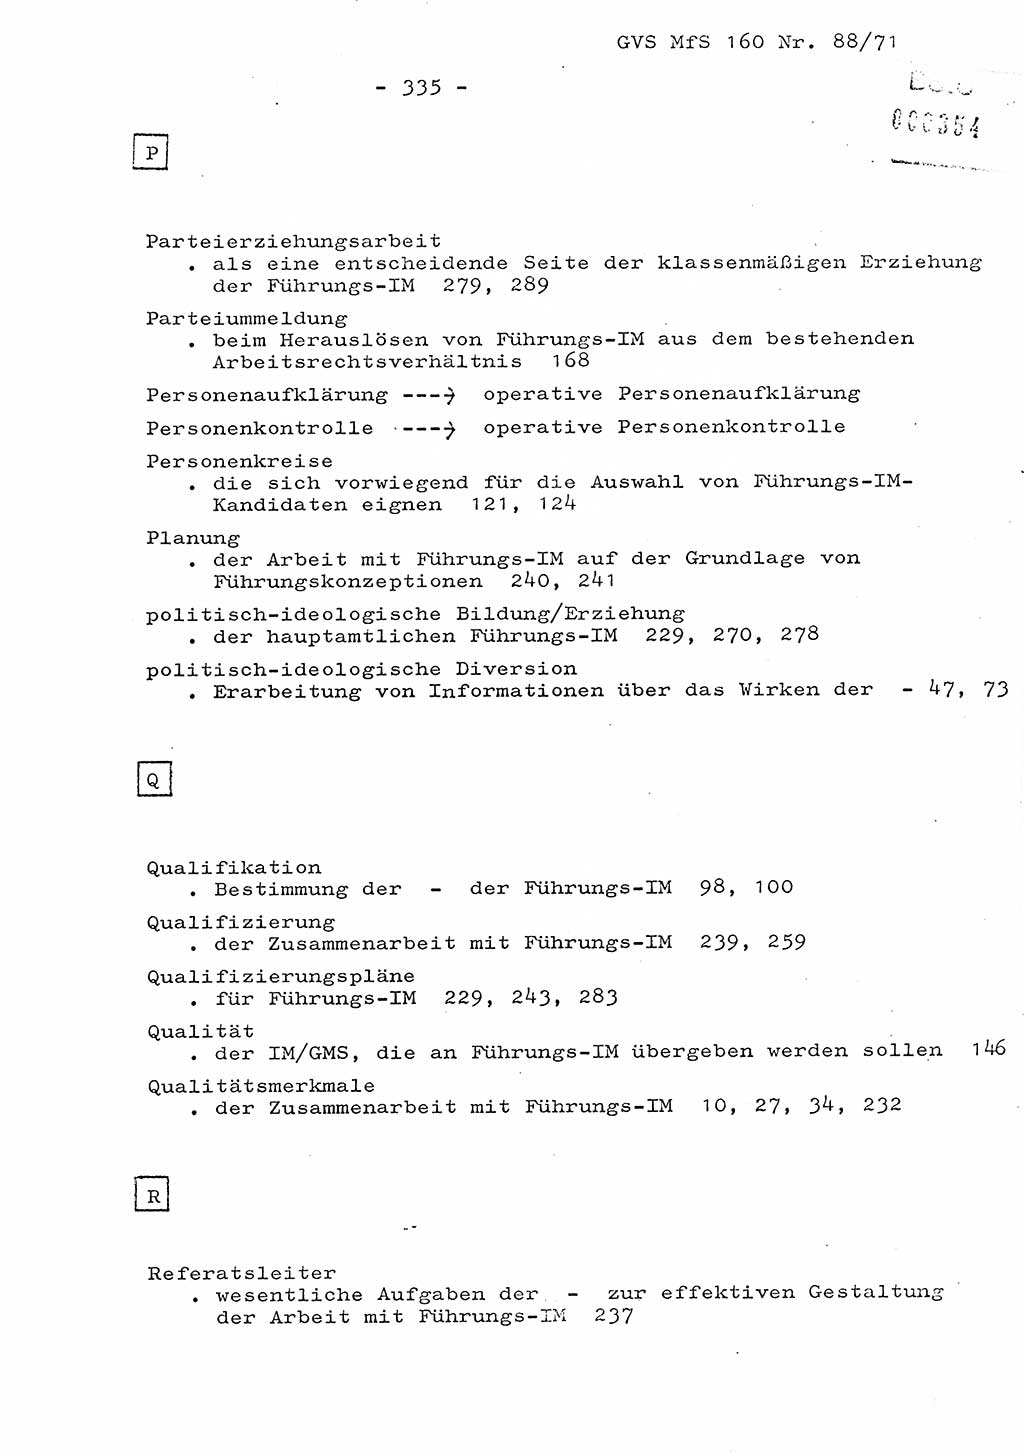 Dissertation Oberstleutnant Josef Schwarz (BV Schwerin), Major Fritz Amm (JHS), Hauptmann Peter Gräßler (JHS), Ministerium für Staatssicherheit (MfS) [Deutsche Demokratische Republik (DDR)], Juristische Hochschule (JHS), Geheime Verschlußsache (GVS) 160-88/71, Potsdam 1972, Seite 335 (Diss. MfS DDR JHS GVS 160-88/71 1972, S. 335)